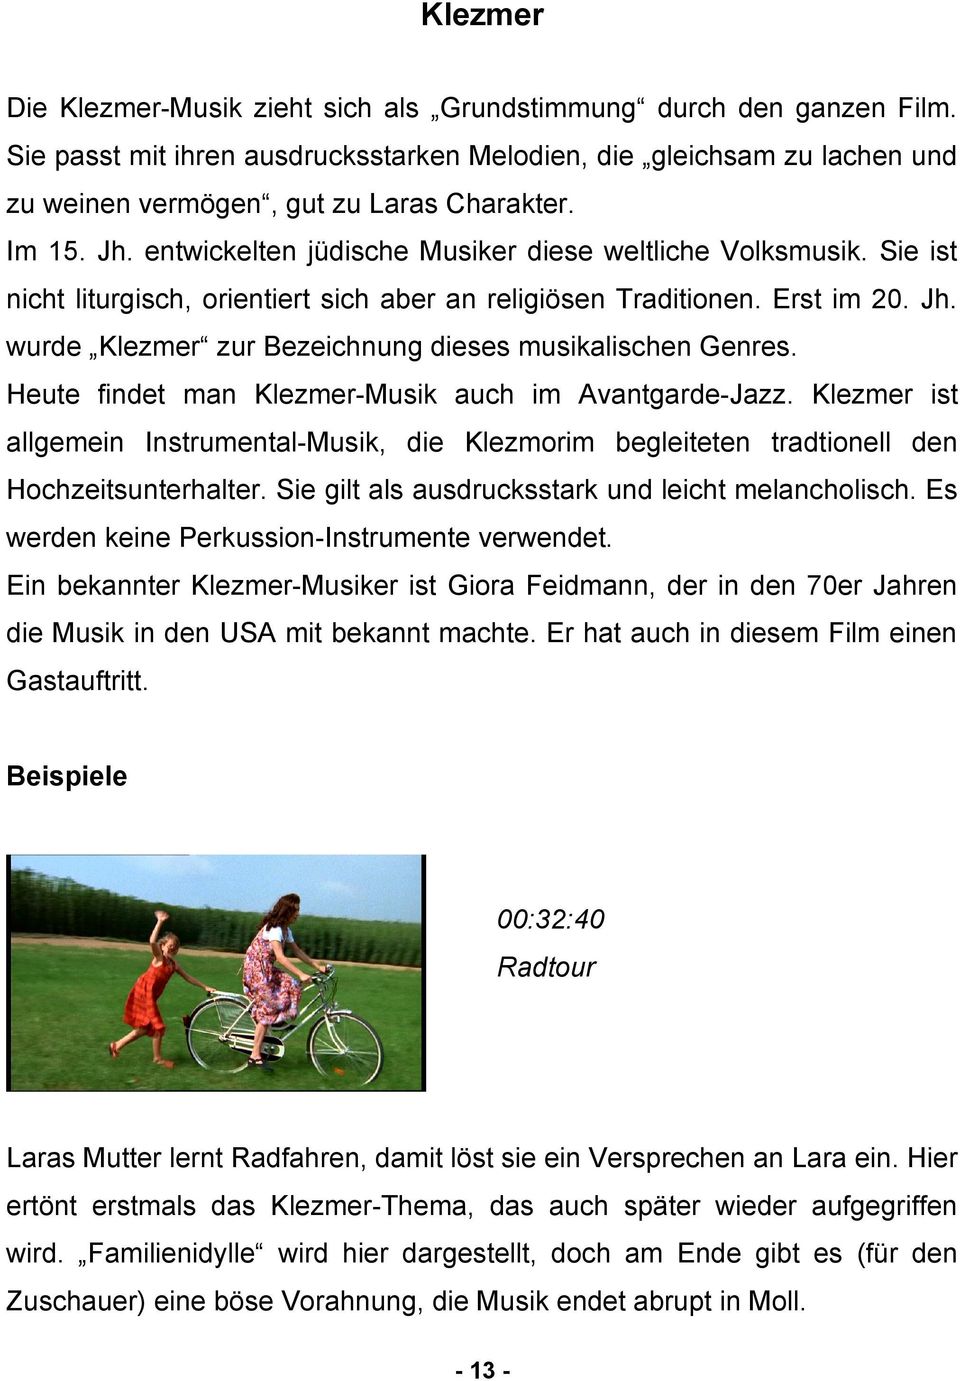 Heute findet man Klezmer-Musik auch im Avantgarde-Jazz. Klezmer ist allgemein Instrumental-Musik, die Klezmorim begleiteten tradtionell den Hochzeitsunterhalter.